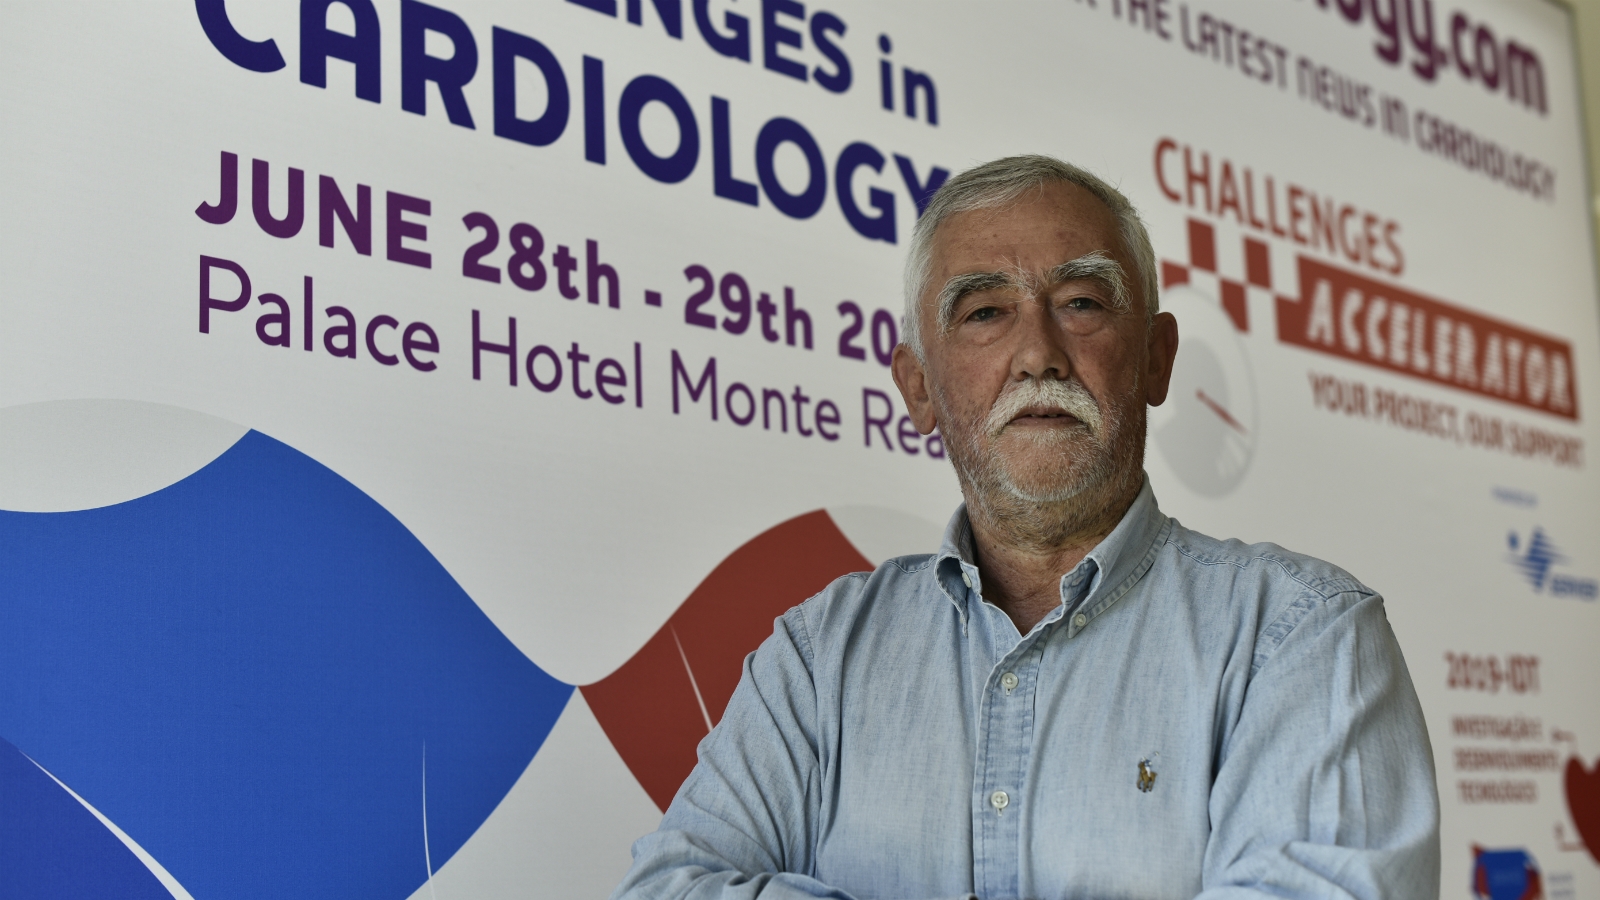 9th Challenges in Cardiology: novidades e desafios discutidos em ambiente de excelência